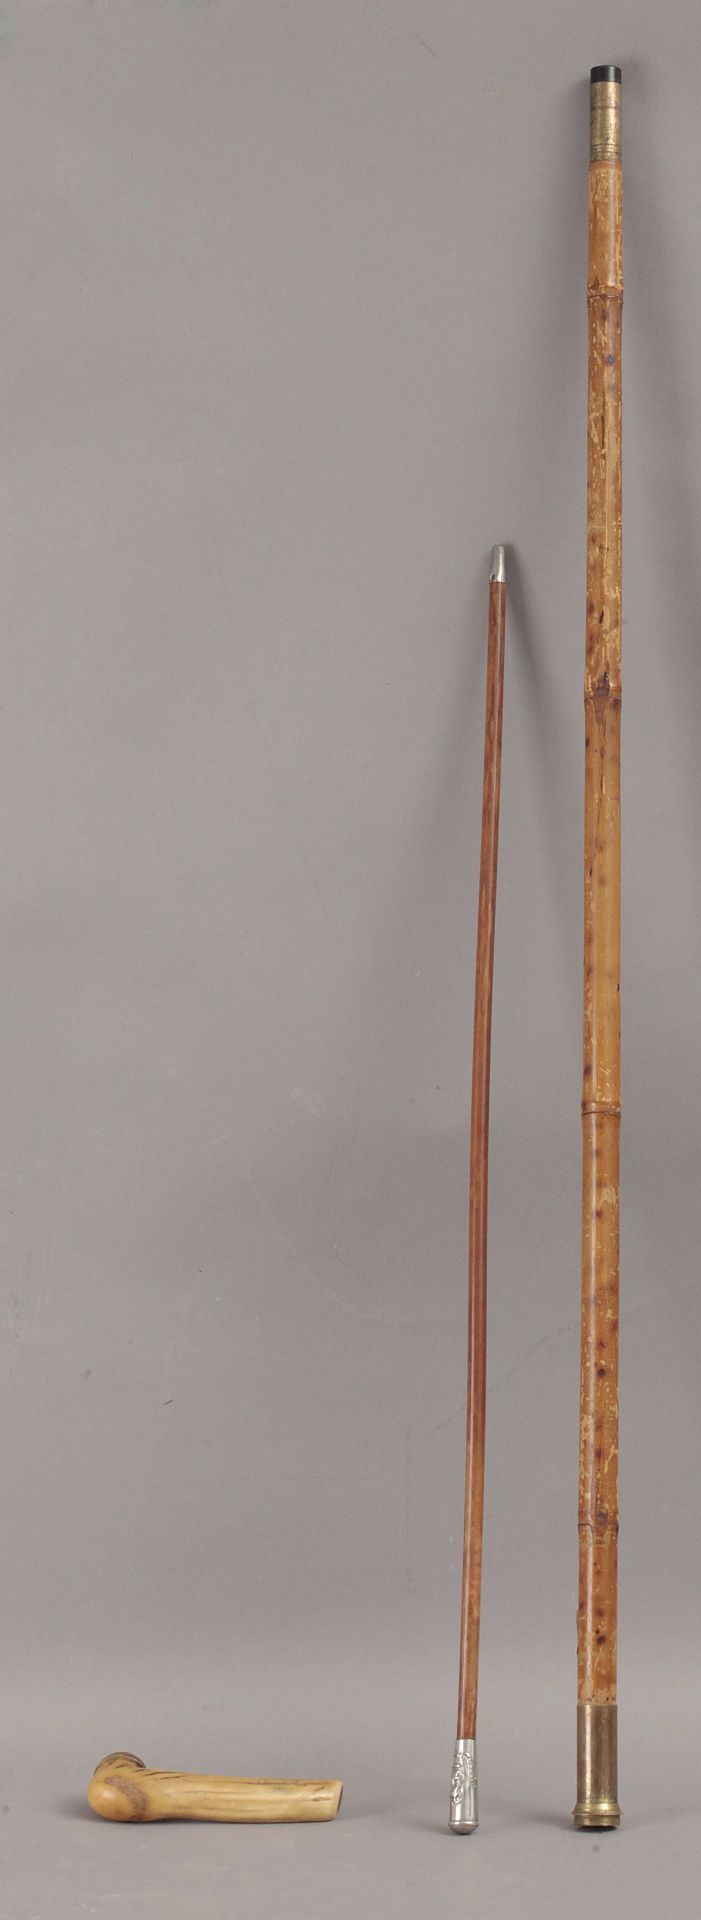 A 19th century walking stick - Bild 5 aus 8